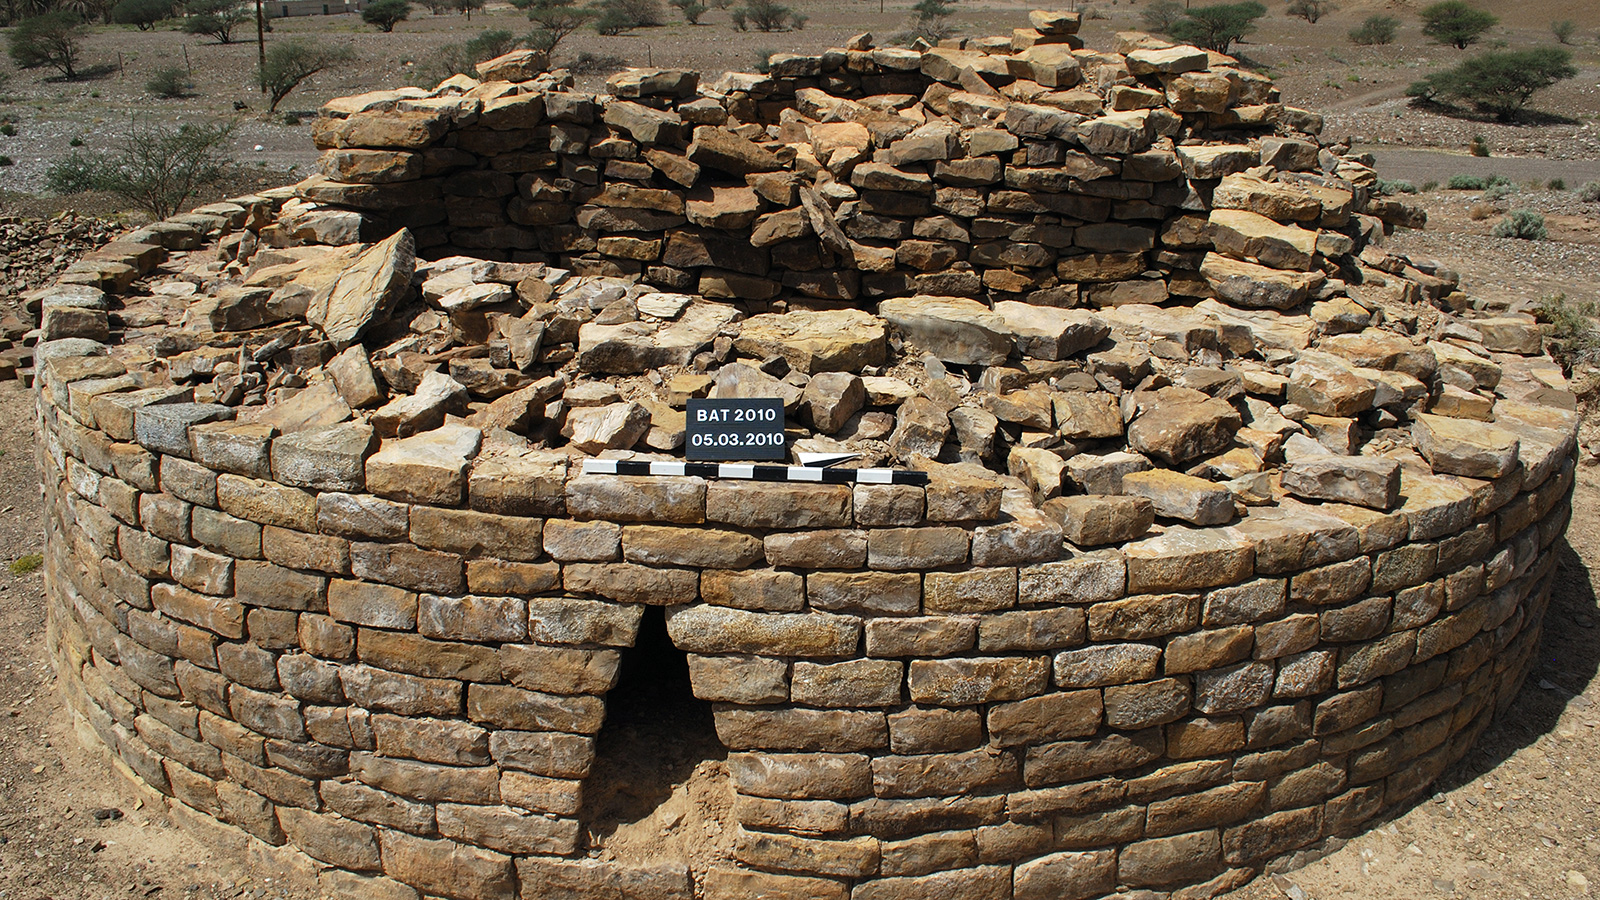 إحدى المقابر يعود تاريخها للألفية الثالثة قبل الميلاد في منطقة بات الأثرية(وزارة التراث العمانية)